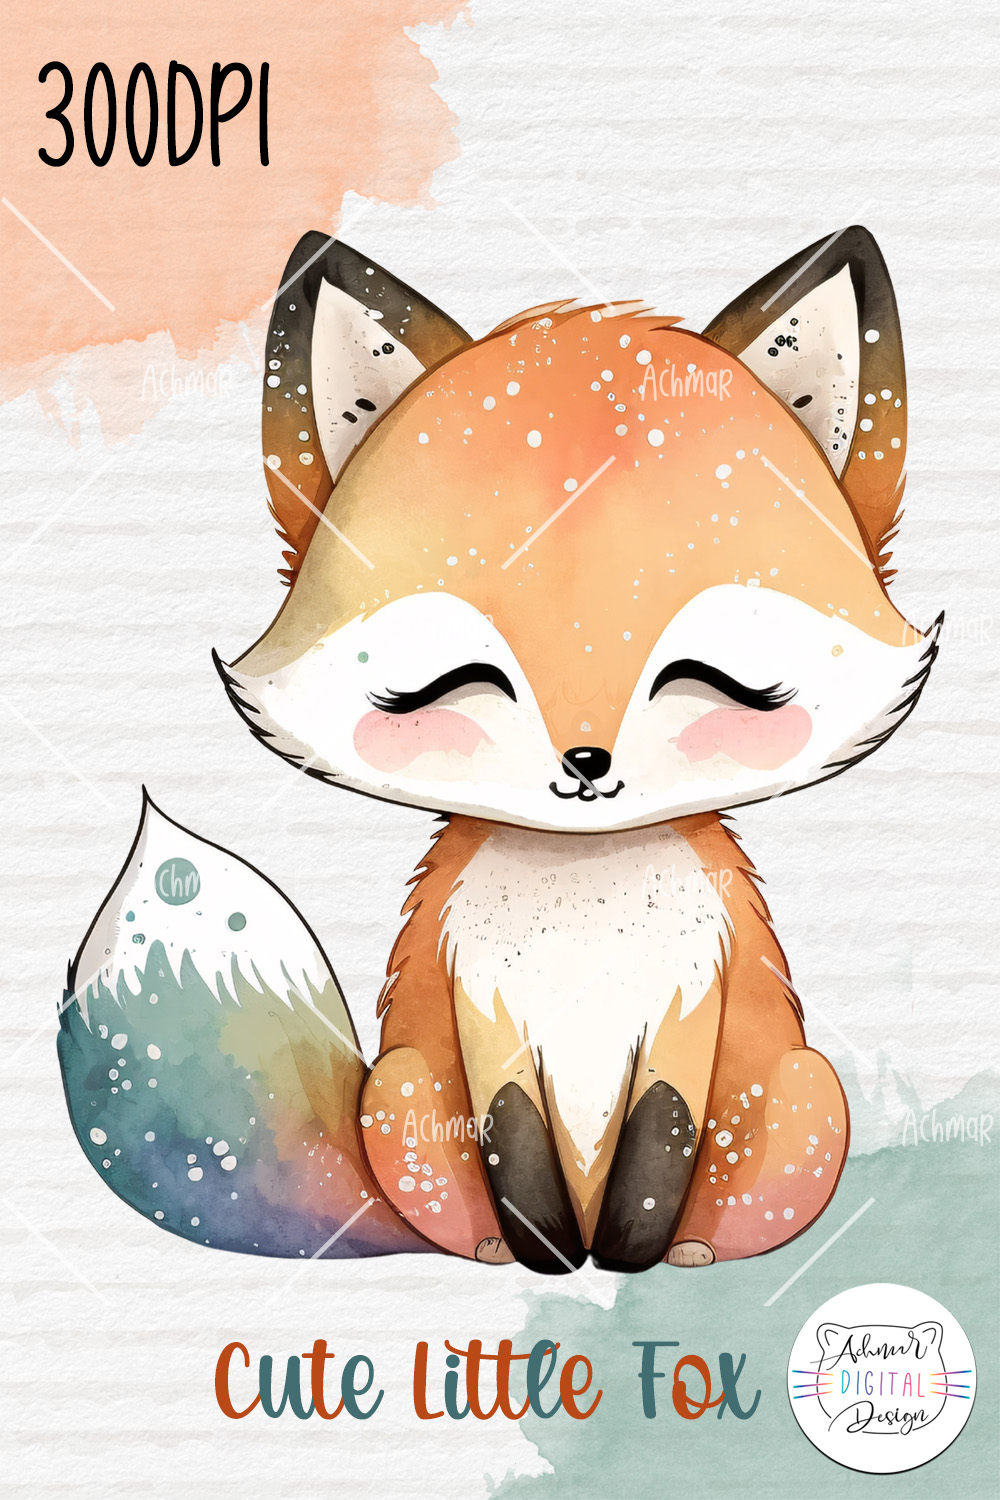 cute little fox watercolor clip art pinterest preview image.